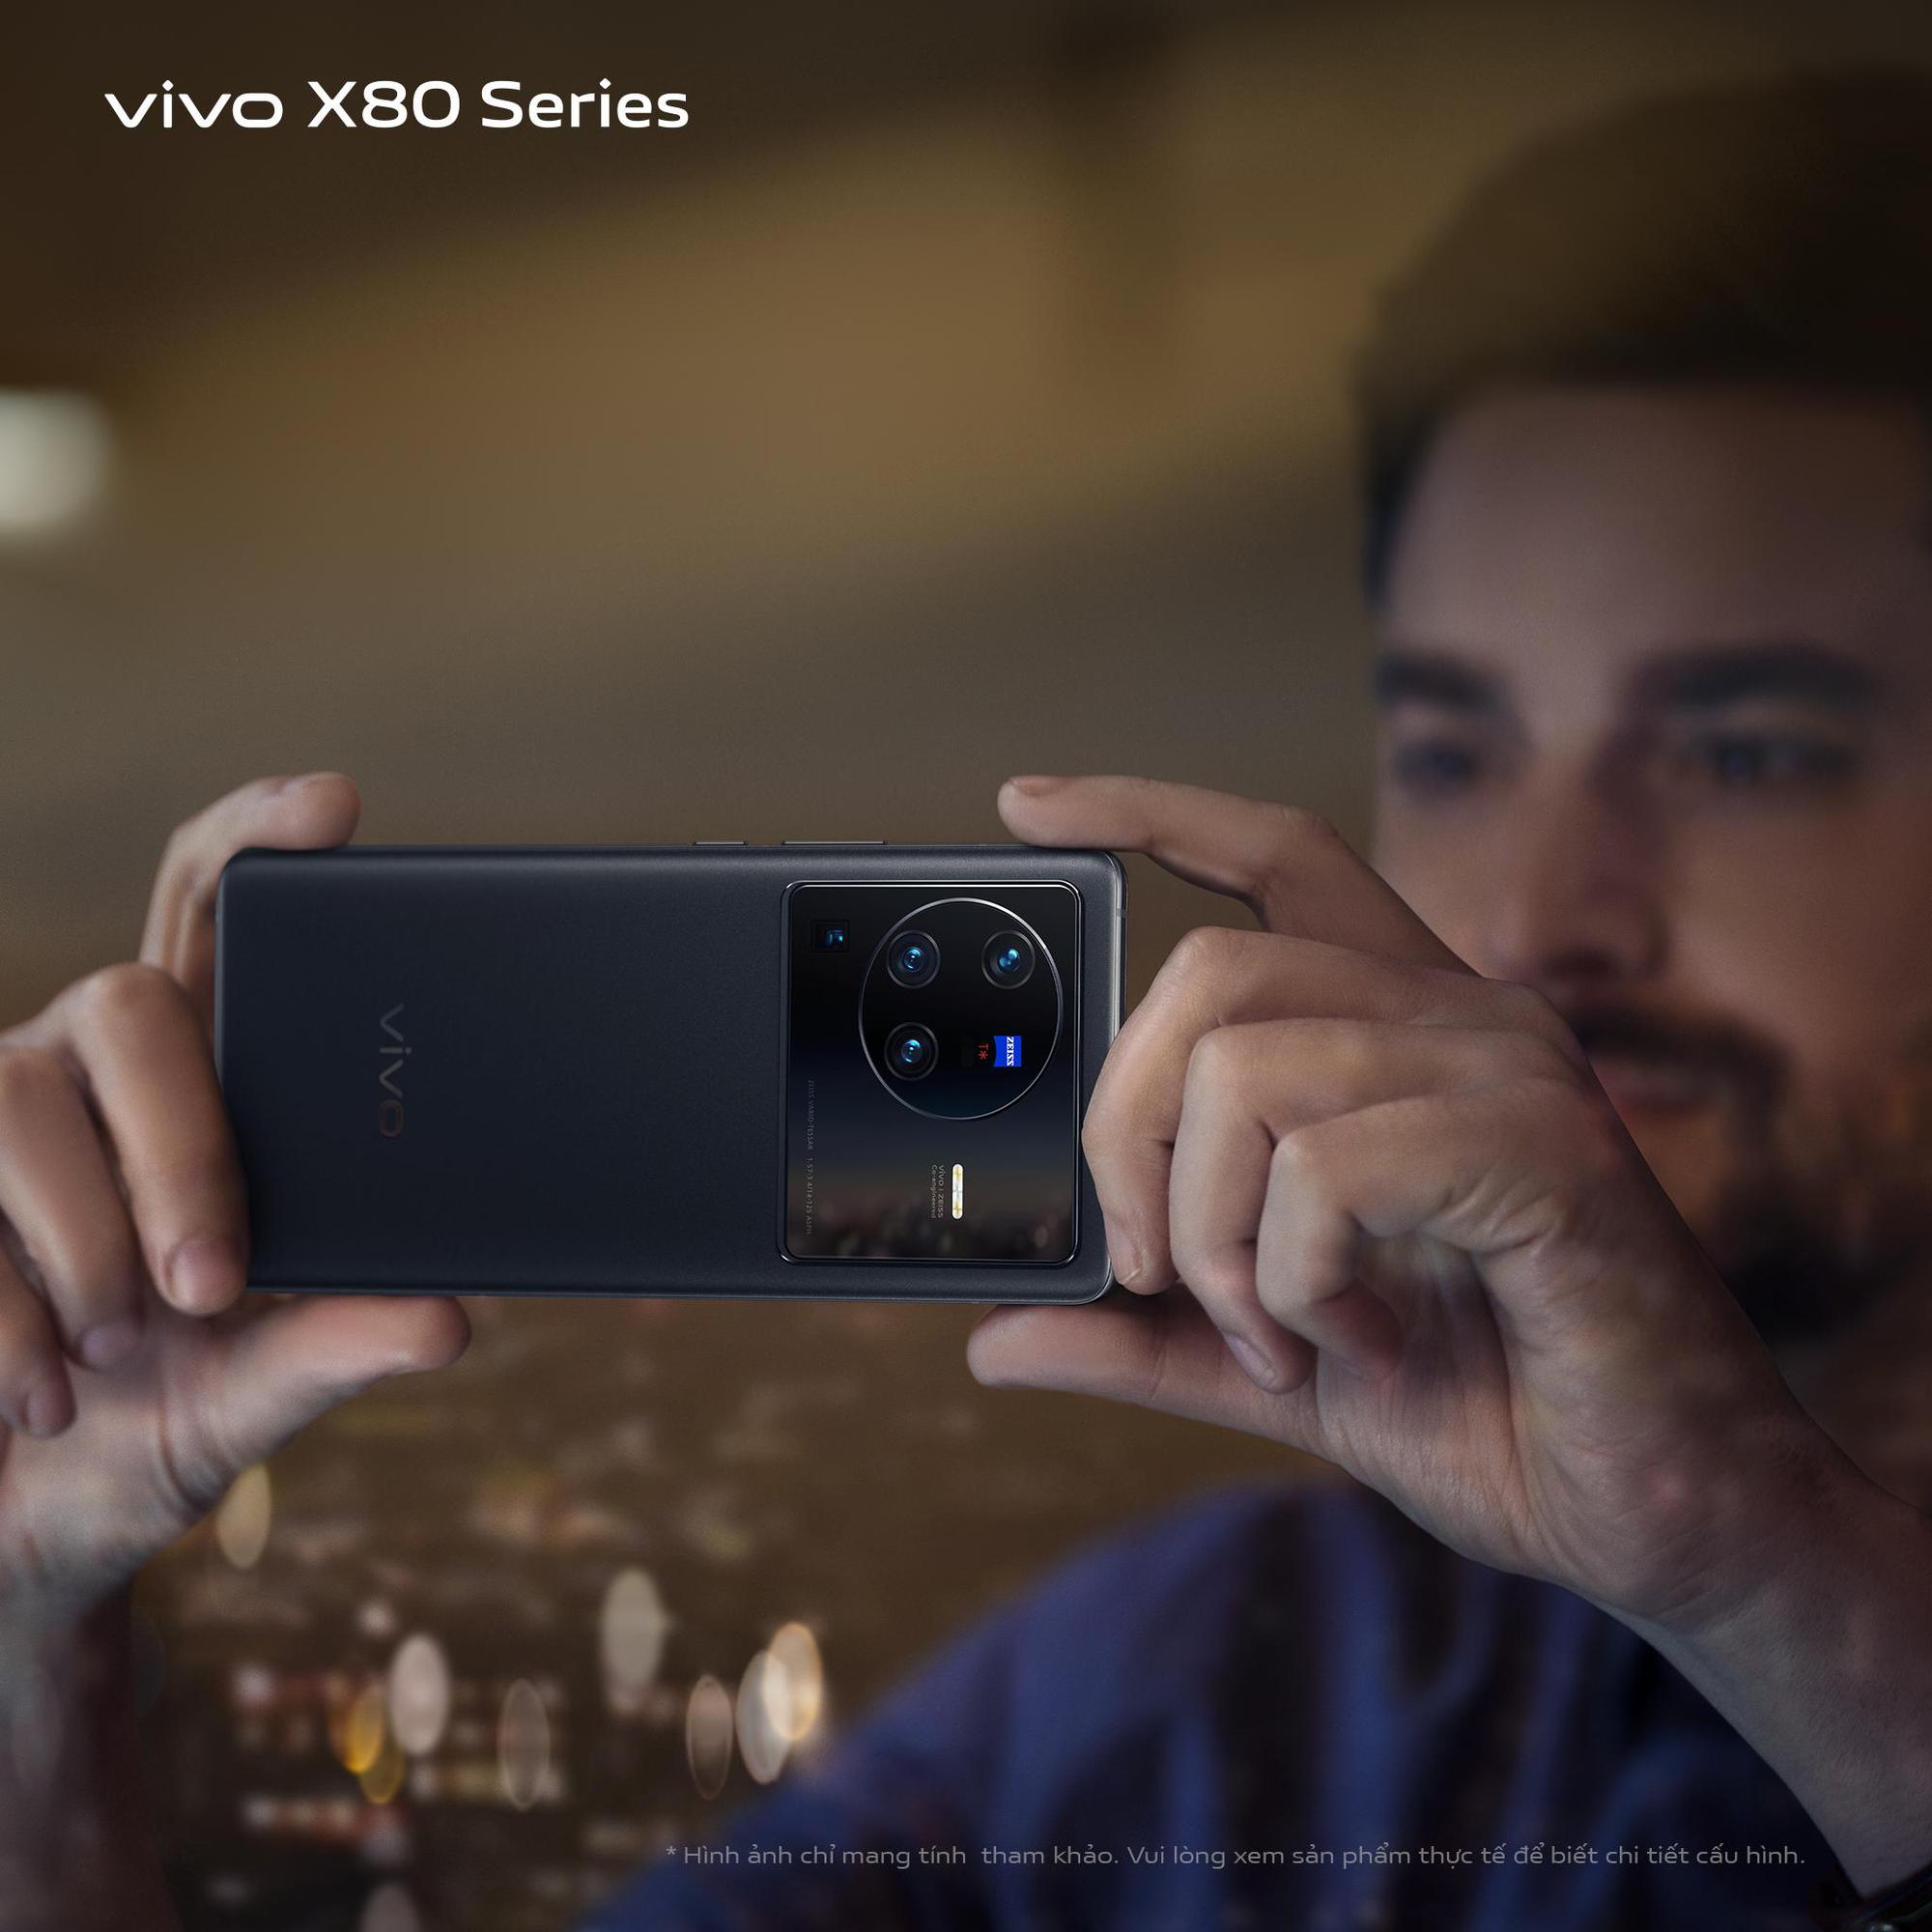 Những cách tân của vivo X80 series nhằm nâng cao trải nghiệm hình ảnh người dùng - Ảnh 4.